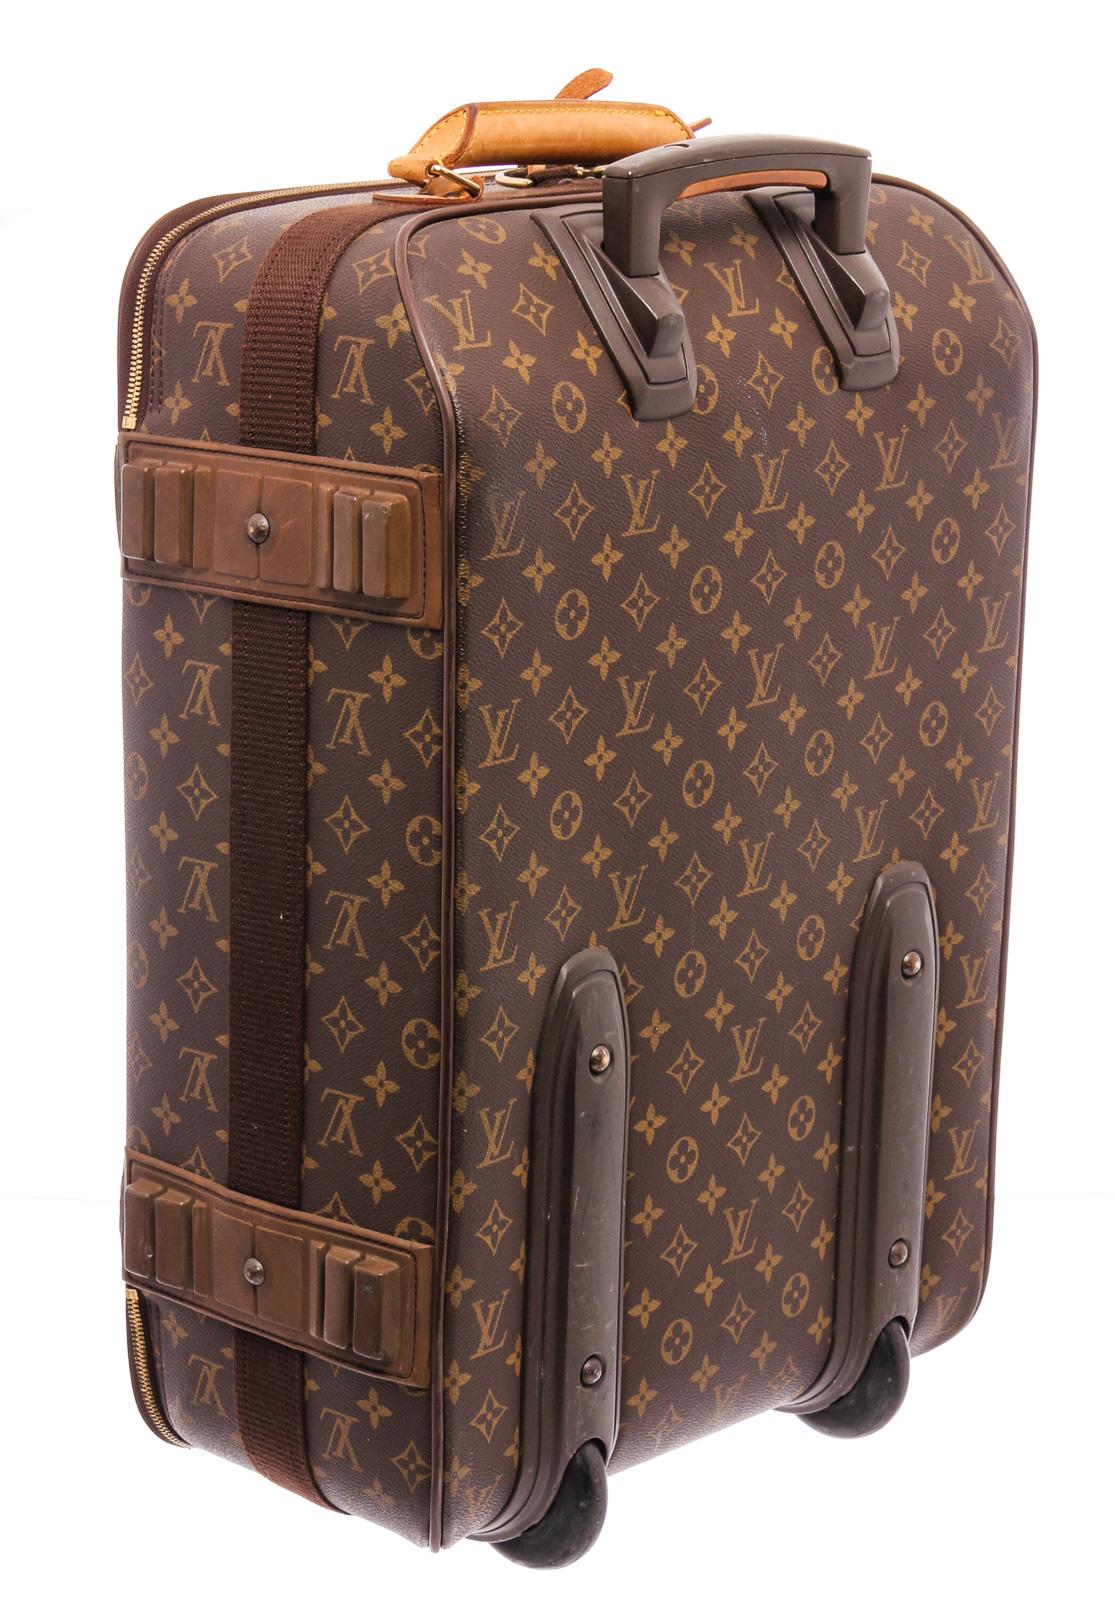 At Auction: 2 pcs. Louis Vuitton Luggage, Pegase Damier 55